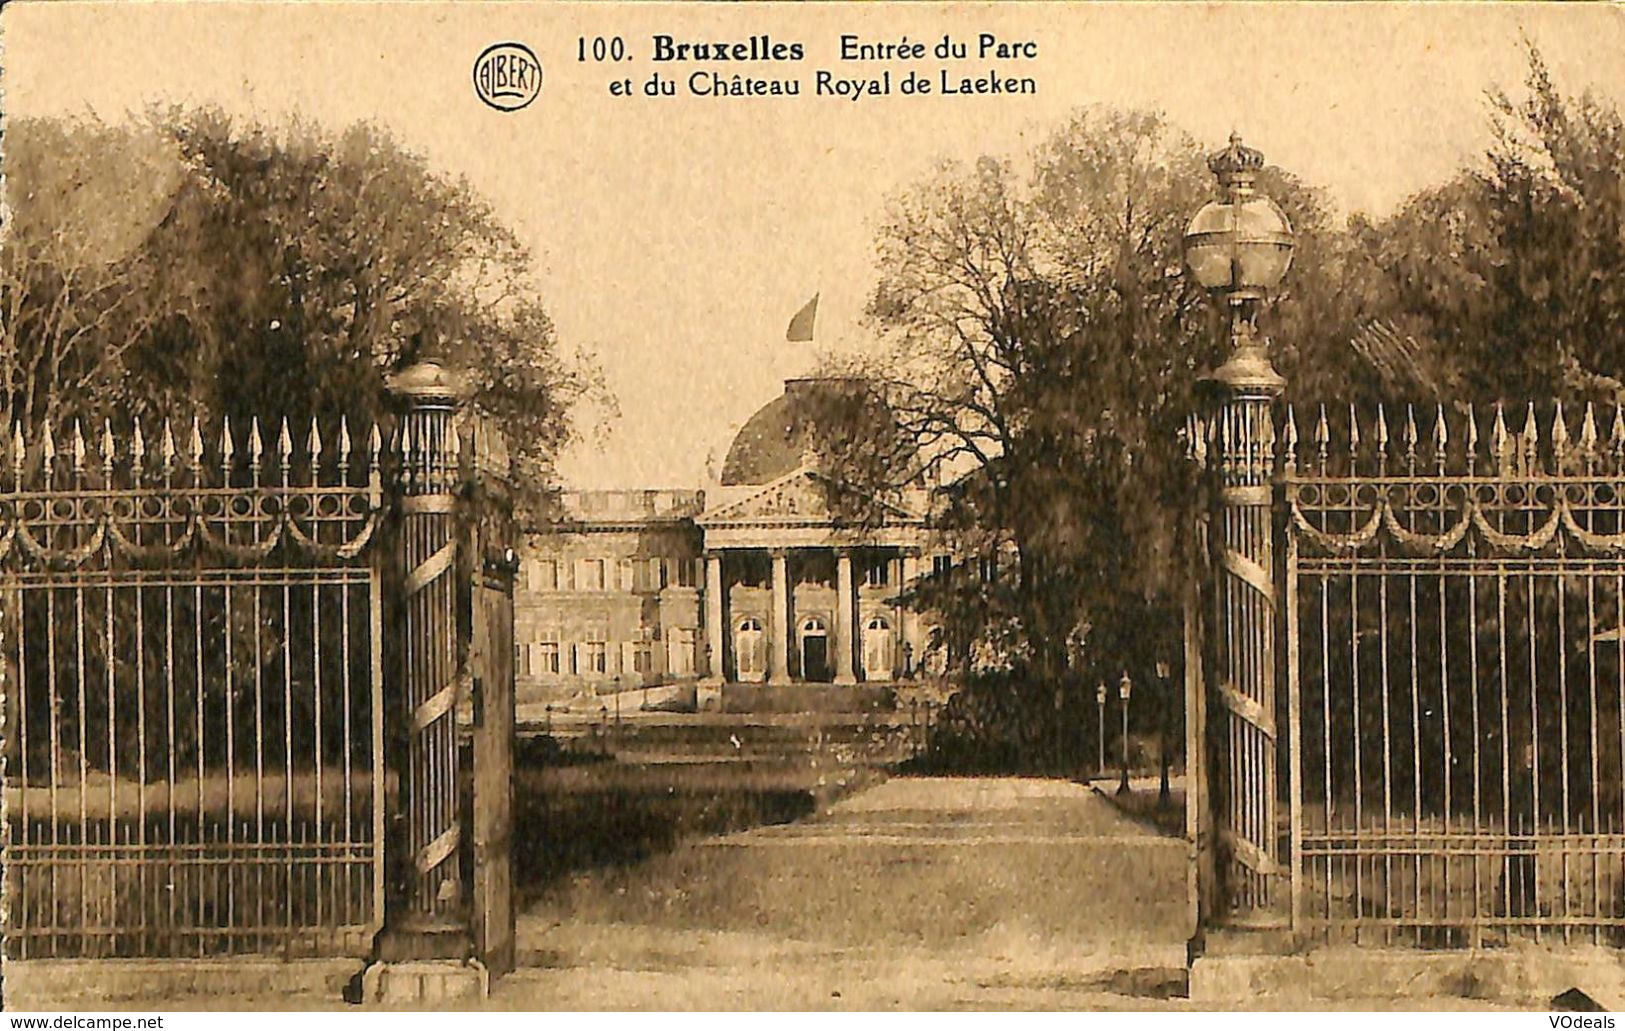 030 605 - CPA - Belgique - Brussel - Bruxelles - Entrée Du Parc Et Chateau Royal De Laeken - Forêts, Parcs, Jardins